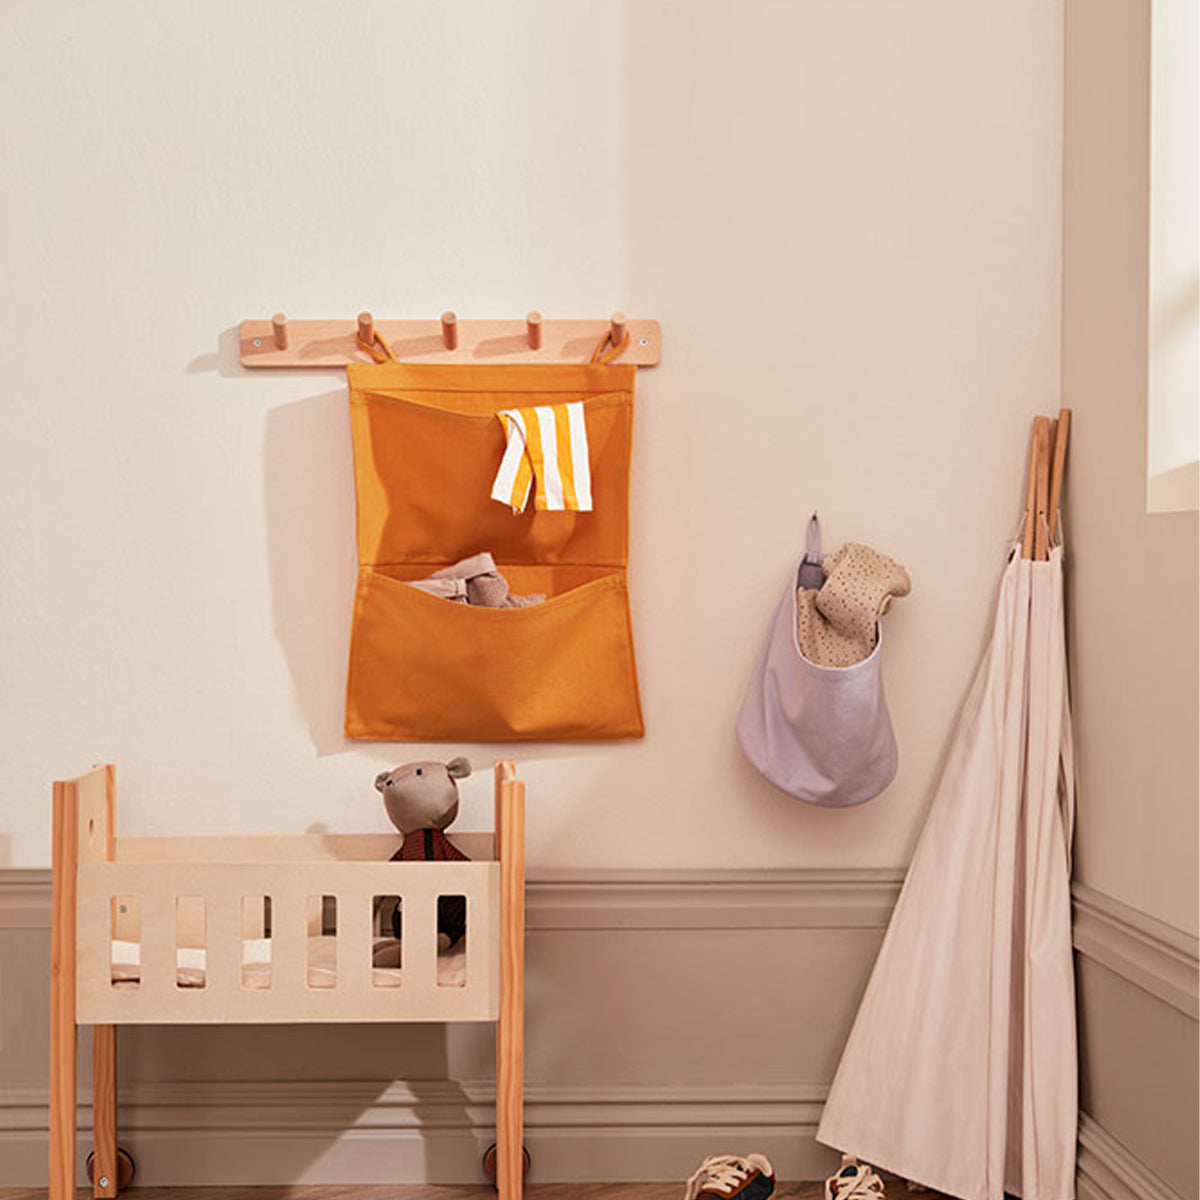 De Kid's Concept houten kapstok is het perfecte accessoire voor elke kinderkamer. Want bestaat er zoiets als te veel opbergruimte in een kinderkamer? Met deze kapstok blijft de kamer van je kindje mooi netjes. VanZus.